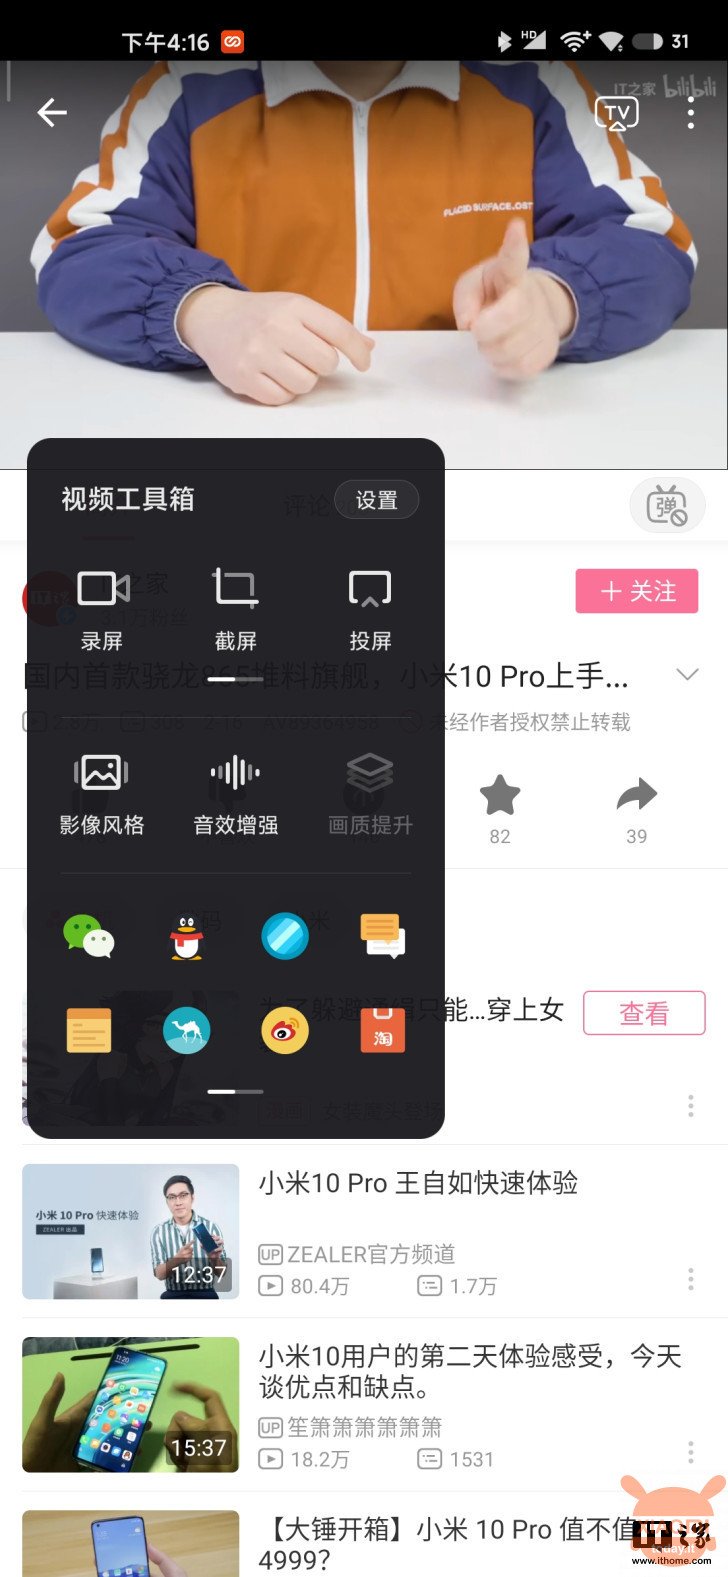 Xiaomi Mi 10 Pro Video Toolbox